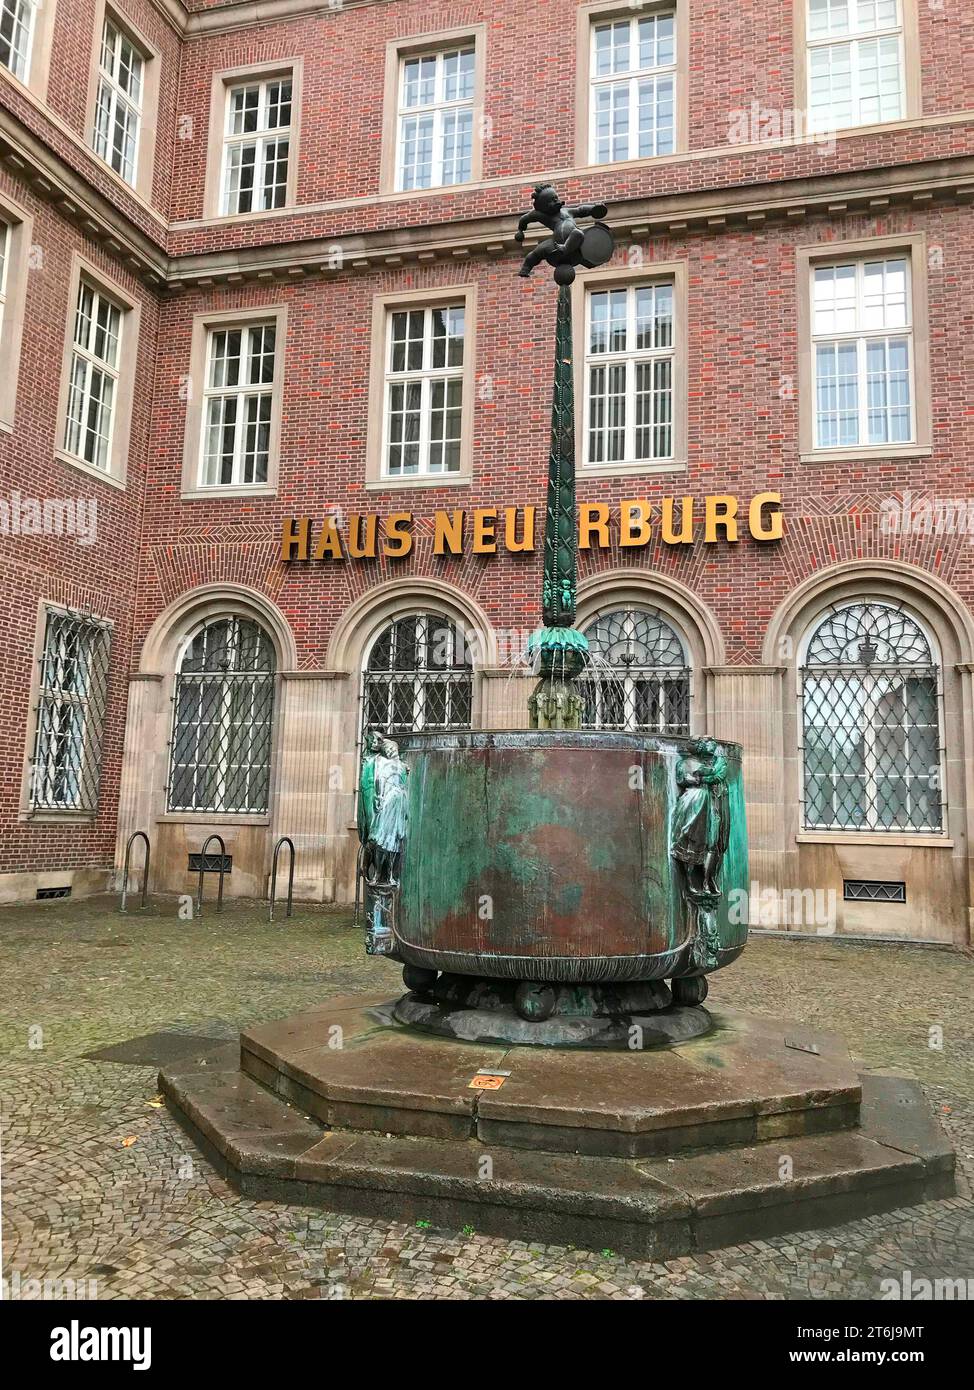 Neuerburg Haus mit Fastnachtsbrunnen, Köln, Nordrhein-Westfalen, Deutschland, Europa Stockfoto